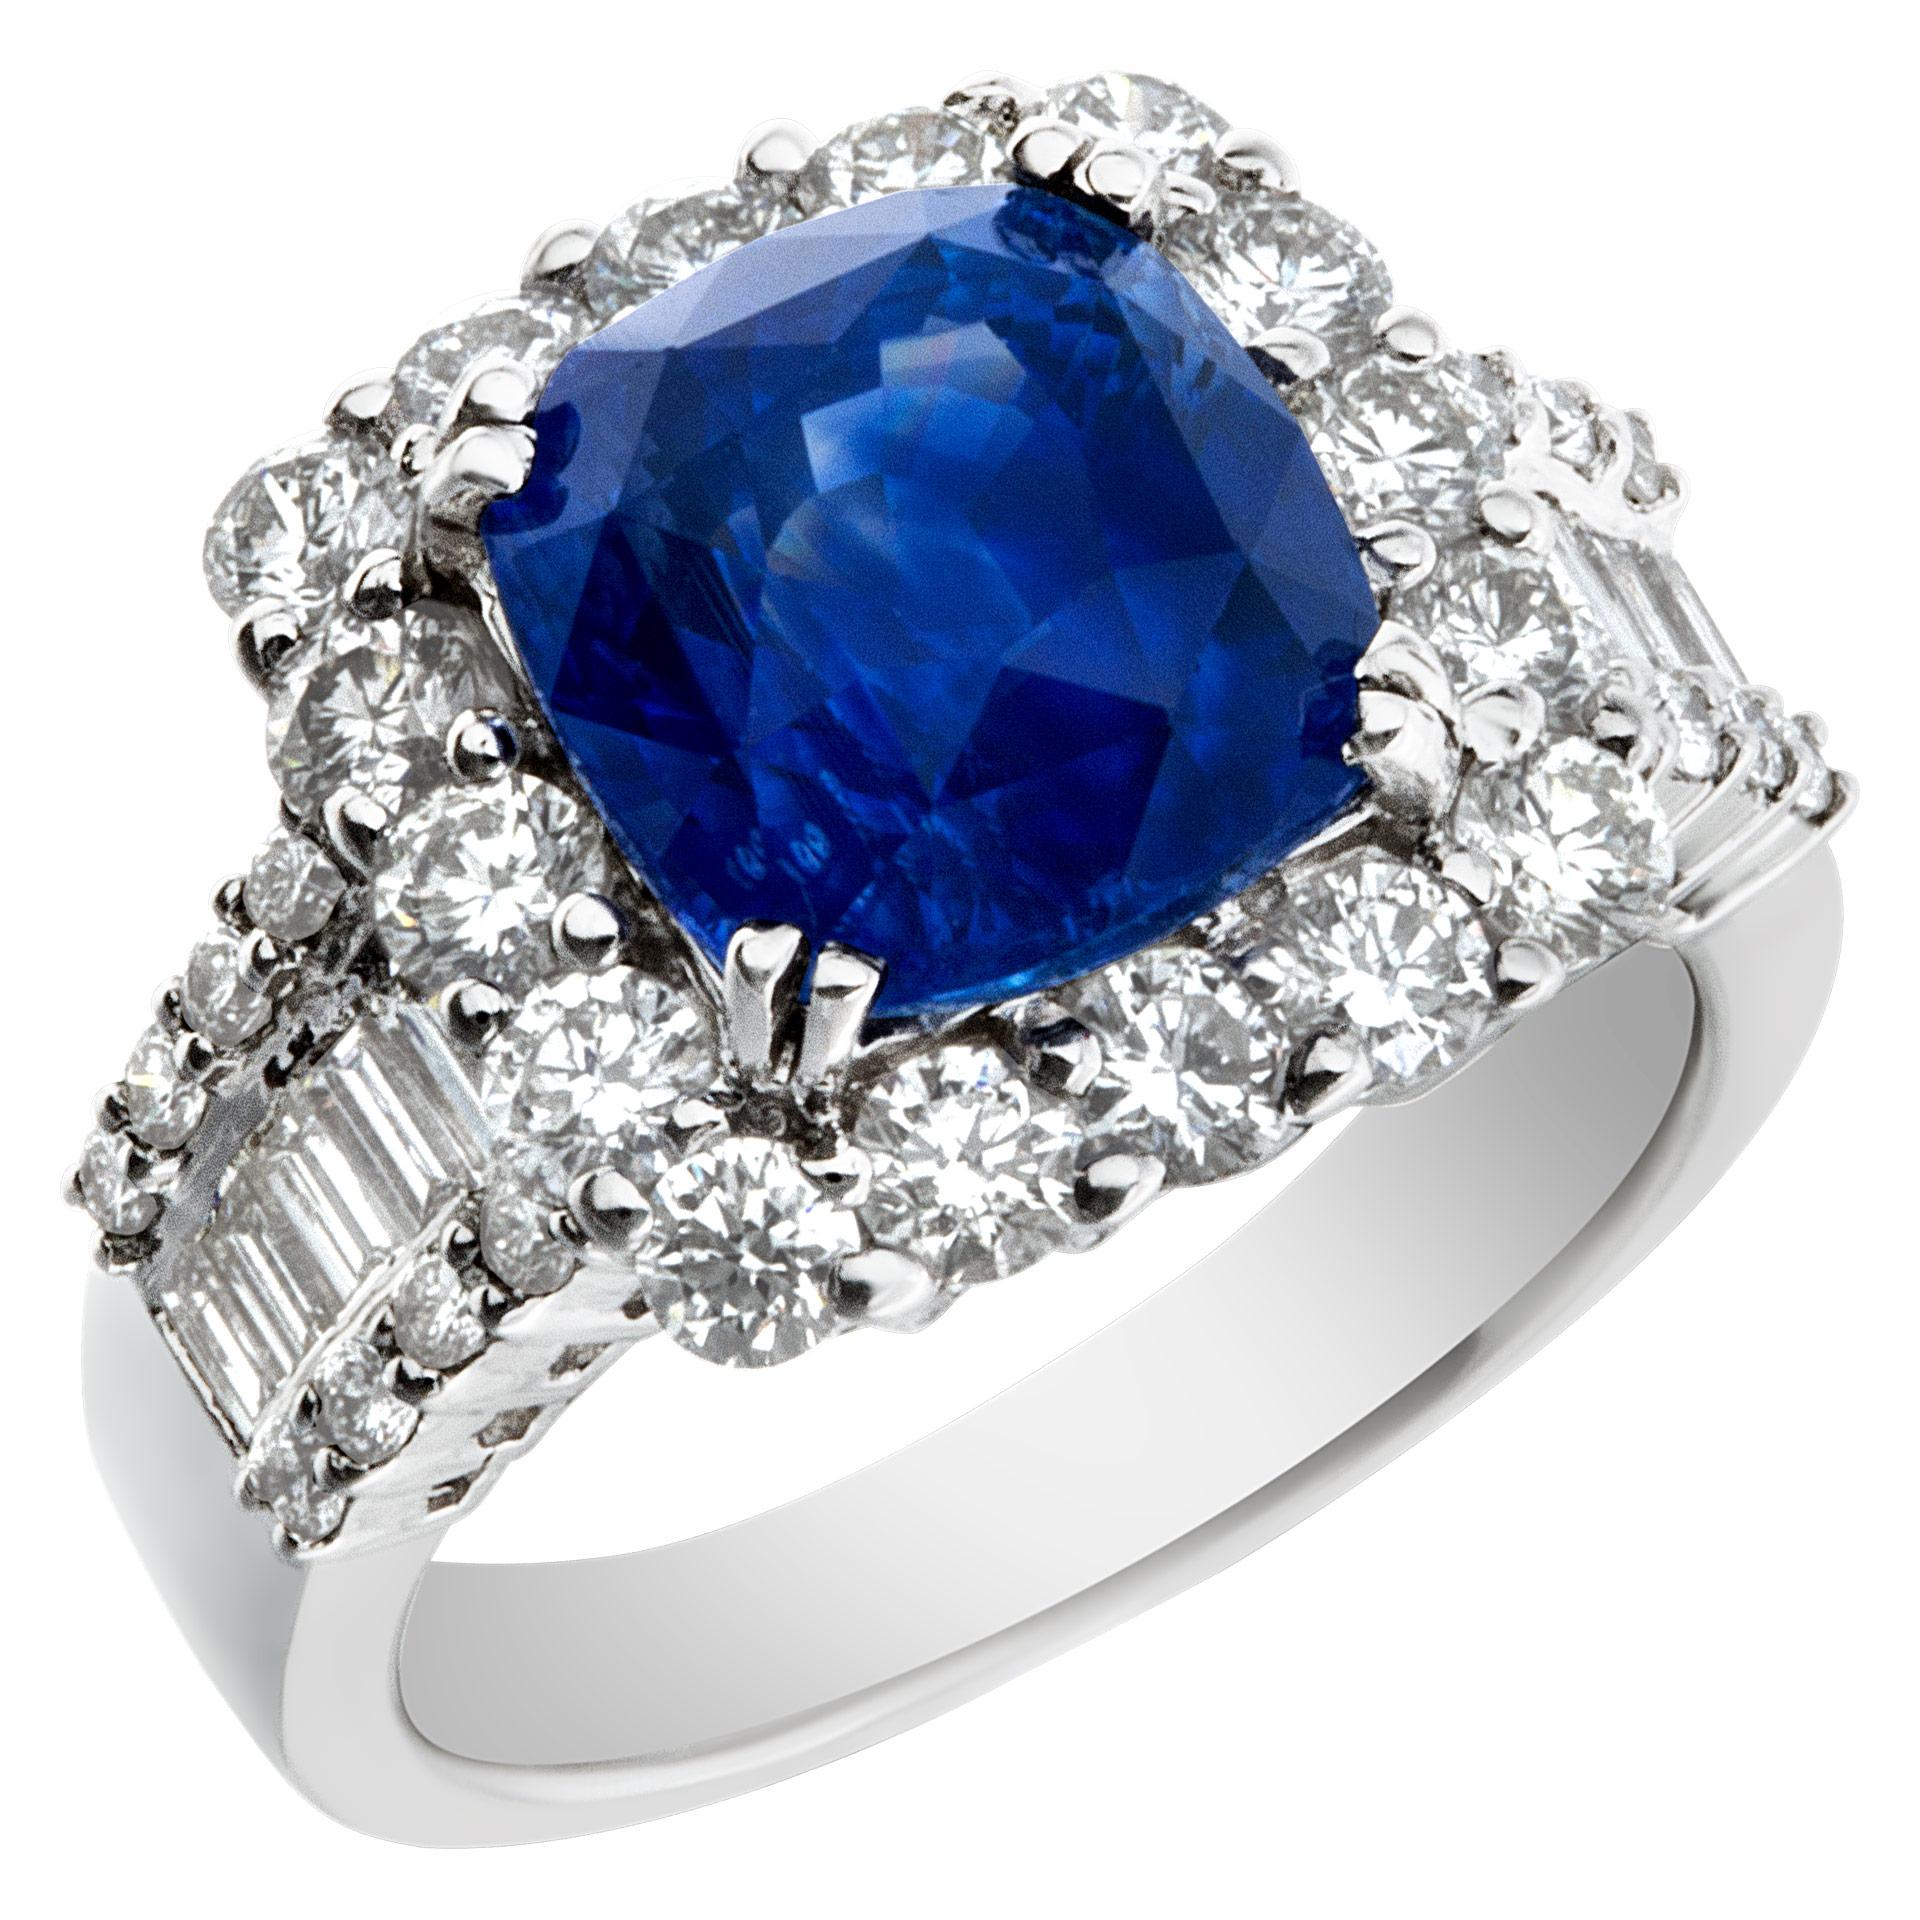 Superbe bague en saphir bleu chauffé de 5,73 carats, certifié par le GIA, avec 1,90 carats de diamants de couleur G-H et de pureté VS-SI, en or blanc 18 carats. Cette bague certifiée par le GIA est actuellement de taille 6.5. Certains articles